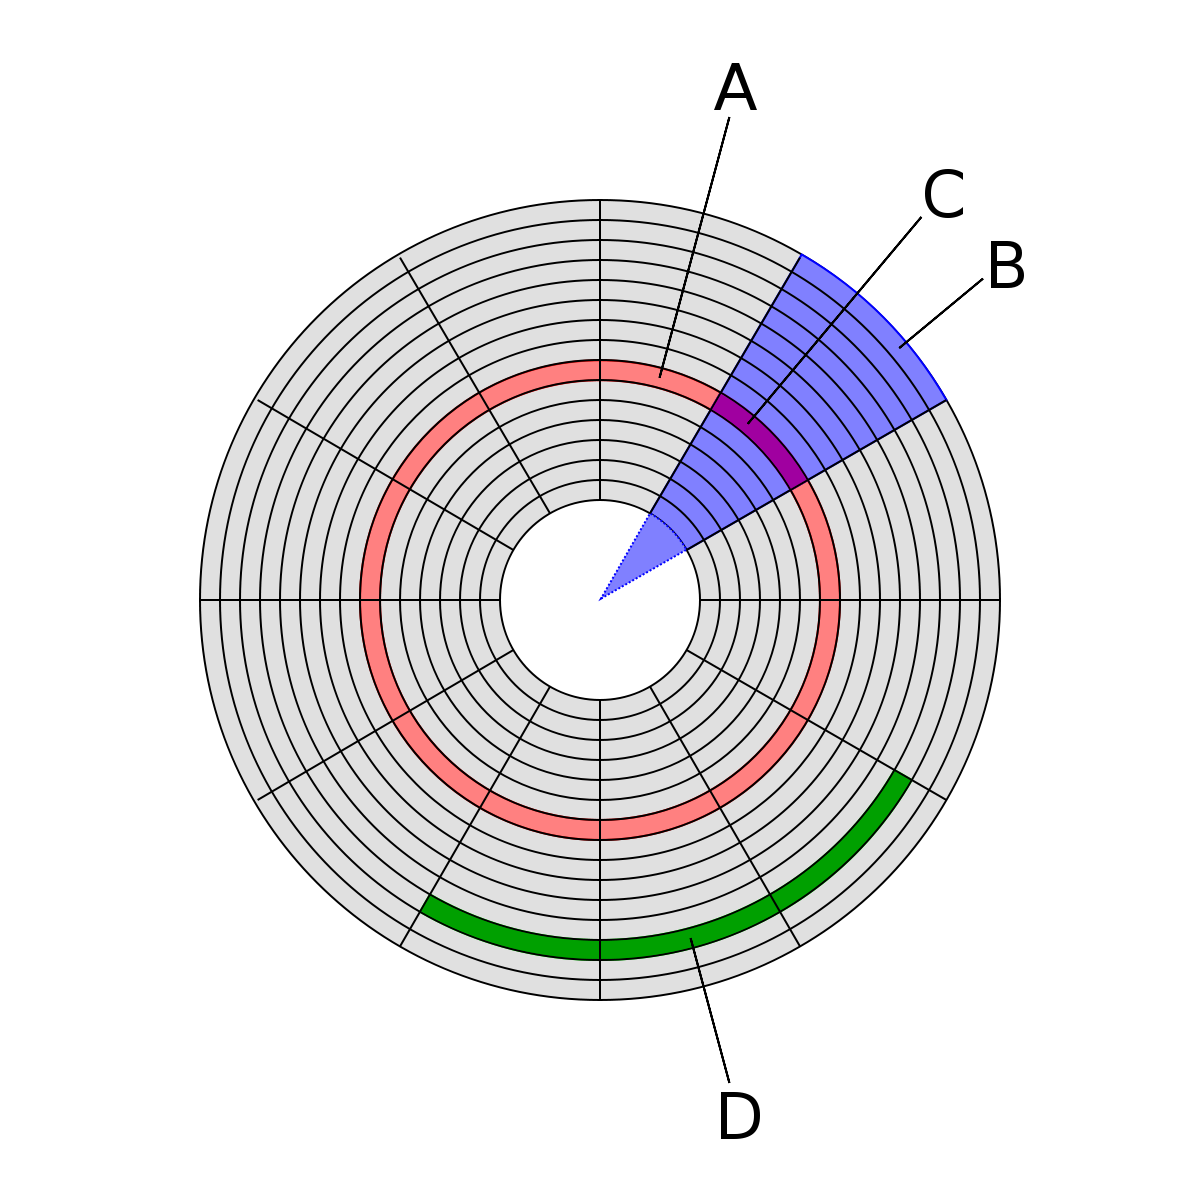 Disk partition diagram